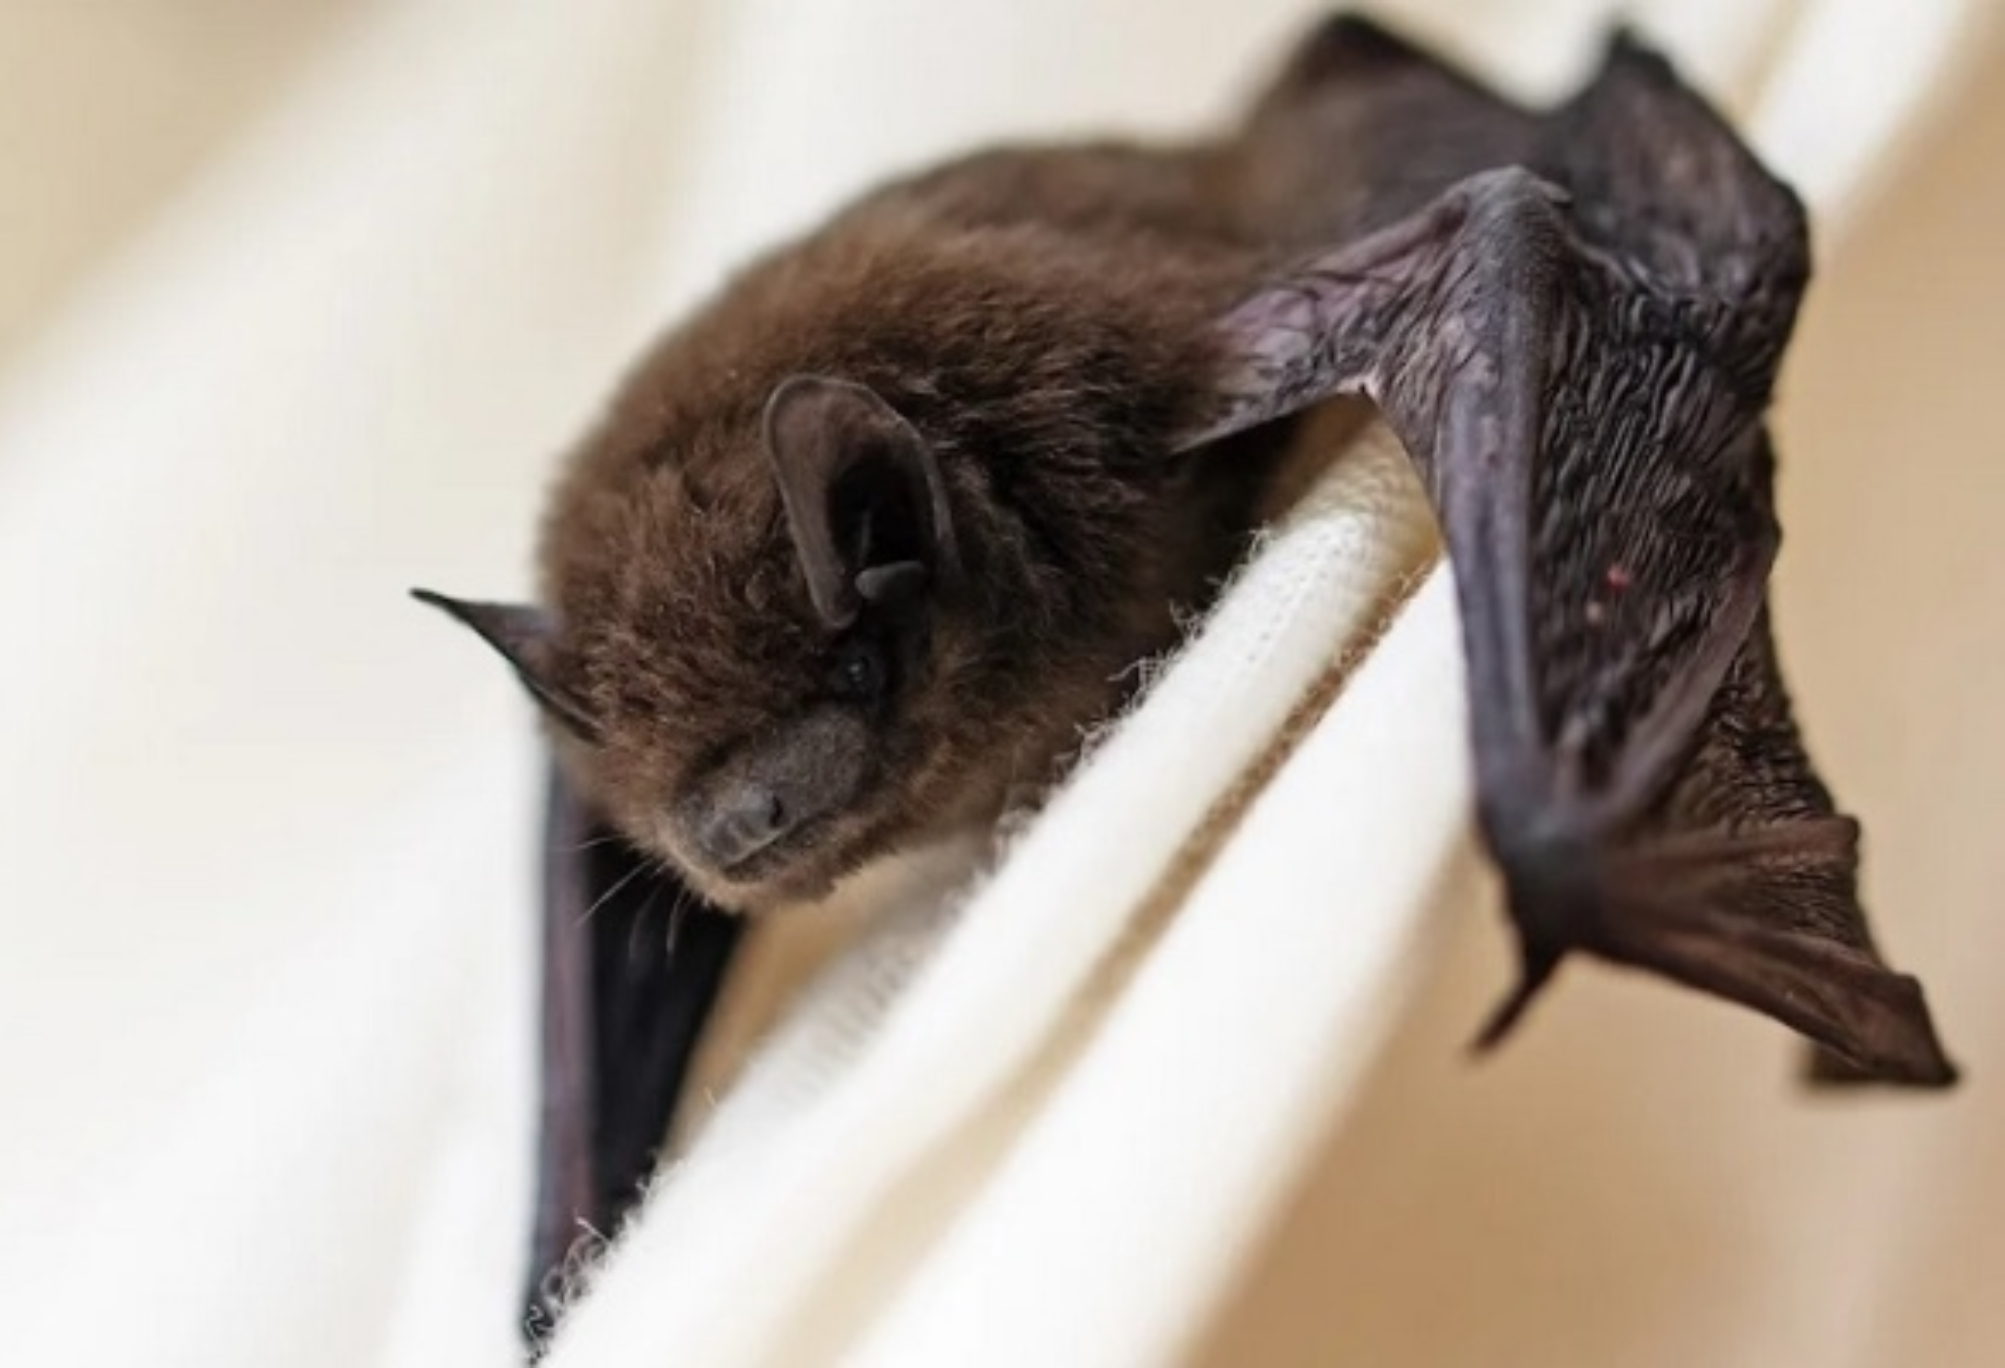 Μπήκε νυχτερίδα στο σπίτι: Οι κίνδυνοι για την υγεία και πως να την διώξεις 